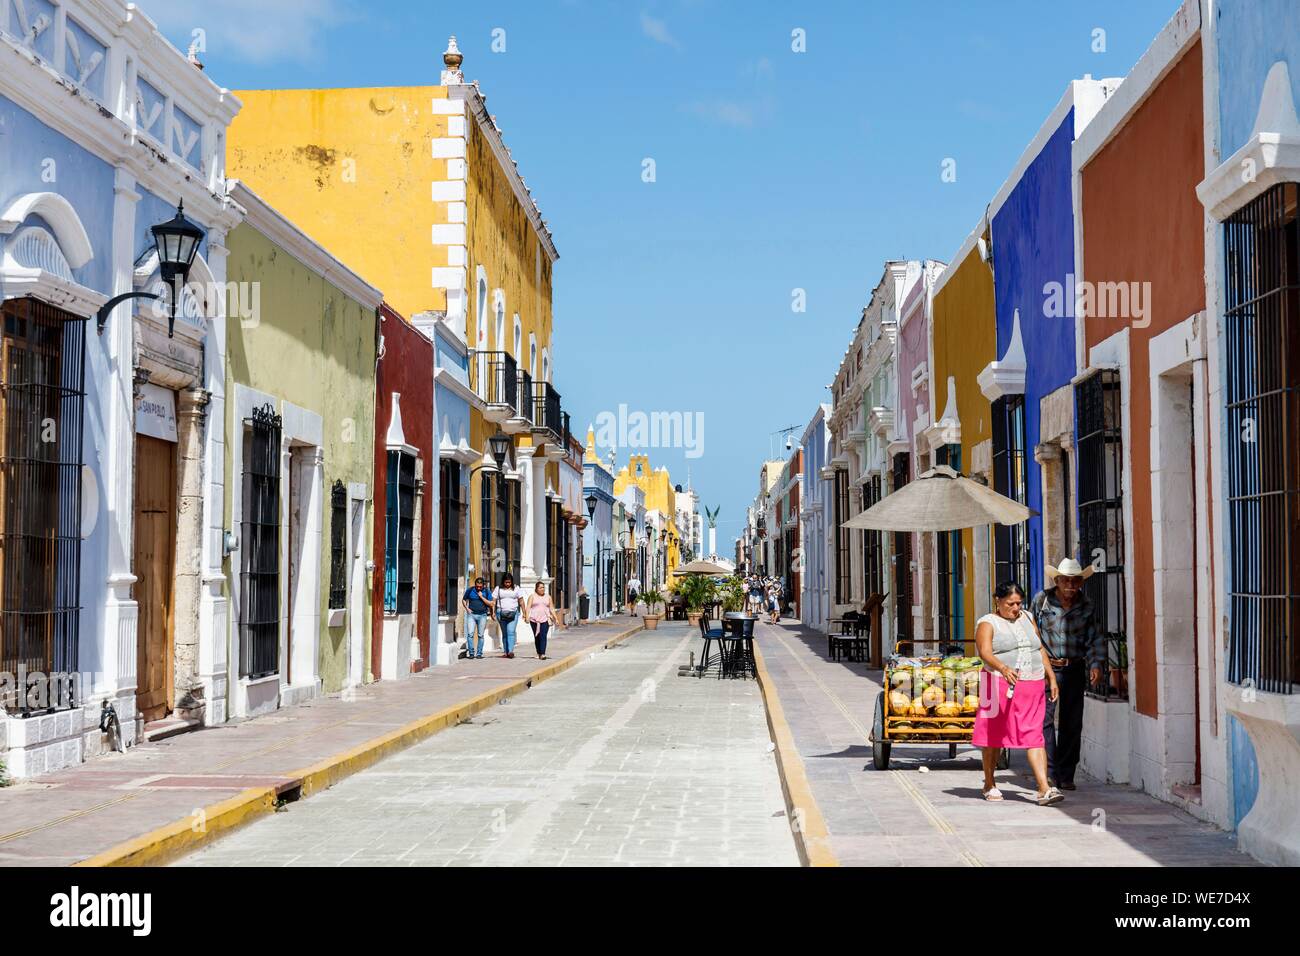 México, estado de Campeche, Campeche, ciudad fortificada listados como Patrimonio Mundial por la UNESCO, calle 59 casas coloniales Foto de stock